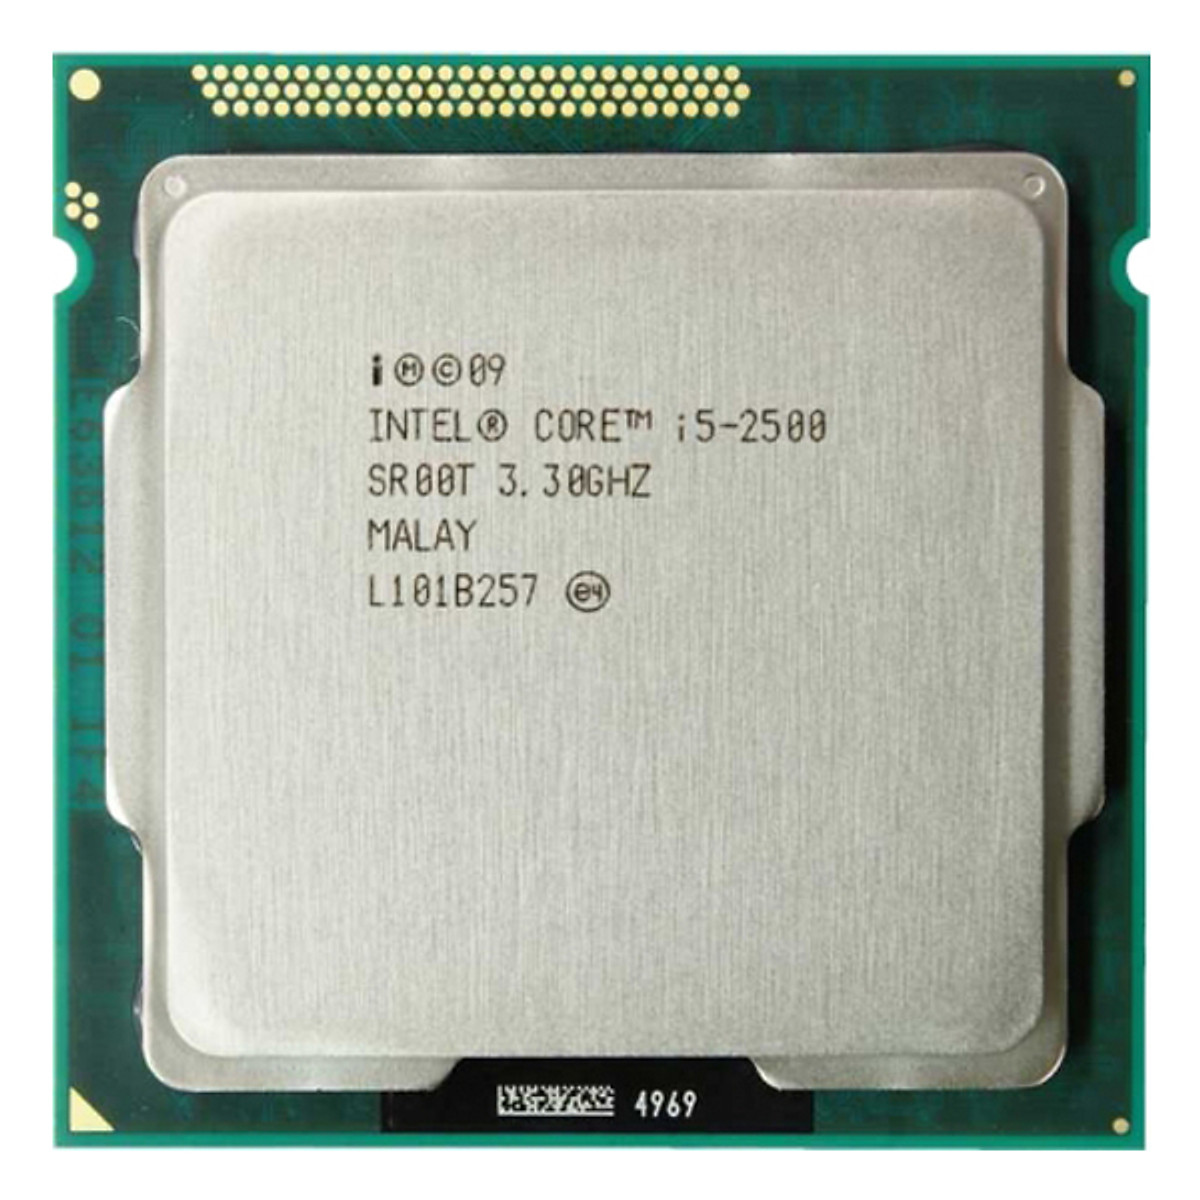 Bộ Vi Xử Lý CPU Intel Core I5-2500 (3.30GHz, 6M, 4 Cores 4 Threads, Socket LGA1155, thế hệ 2) Tray chưa có Fan - Hàng Chính Hãng